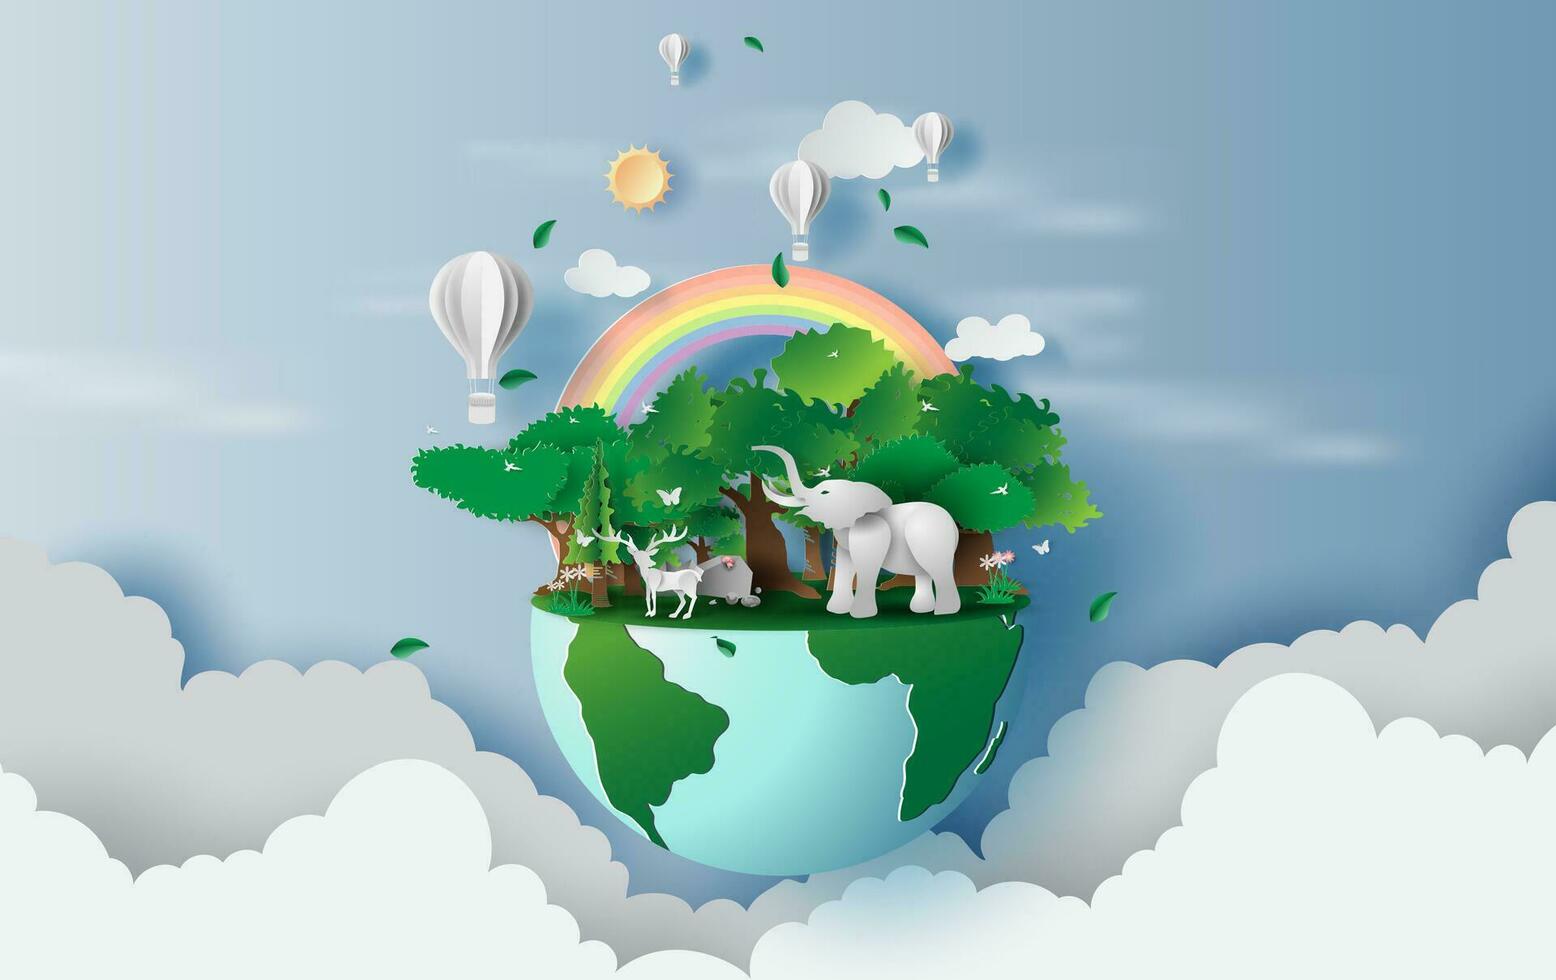 illustratie van rendier in groen bos, creatief wereld milieu en aarde dag concept.landschap dieren in het wild met olifant in groen natuur fabriek door Oppervlakte in de omgeving van ballonnen Aan lucht. papier besnoeiing ,ambacht.vector vector